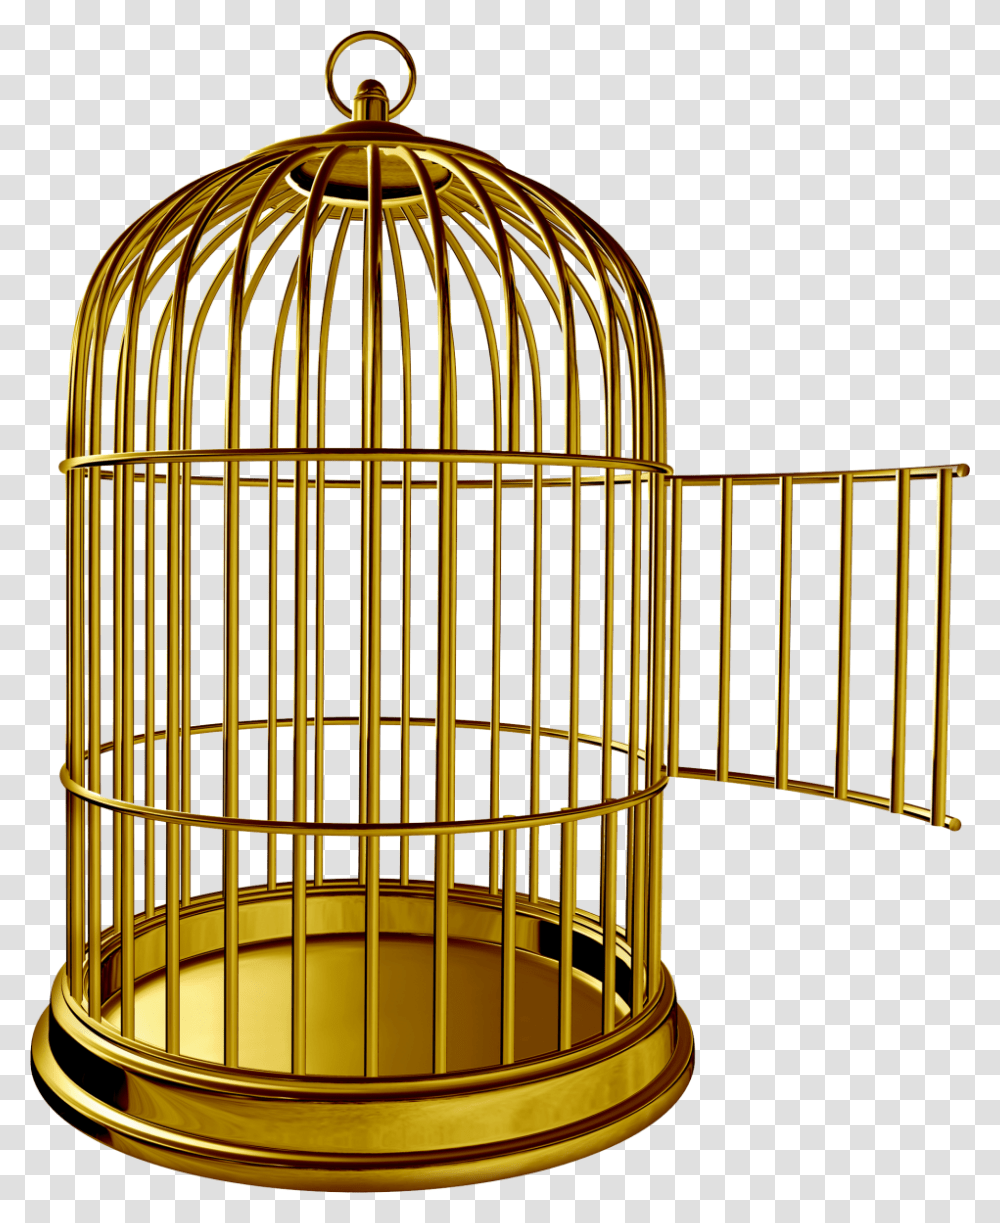 Golden Bird Cage Image Golden Bird Cage, Gate, Trophy, Logo Transparent Png